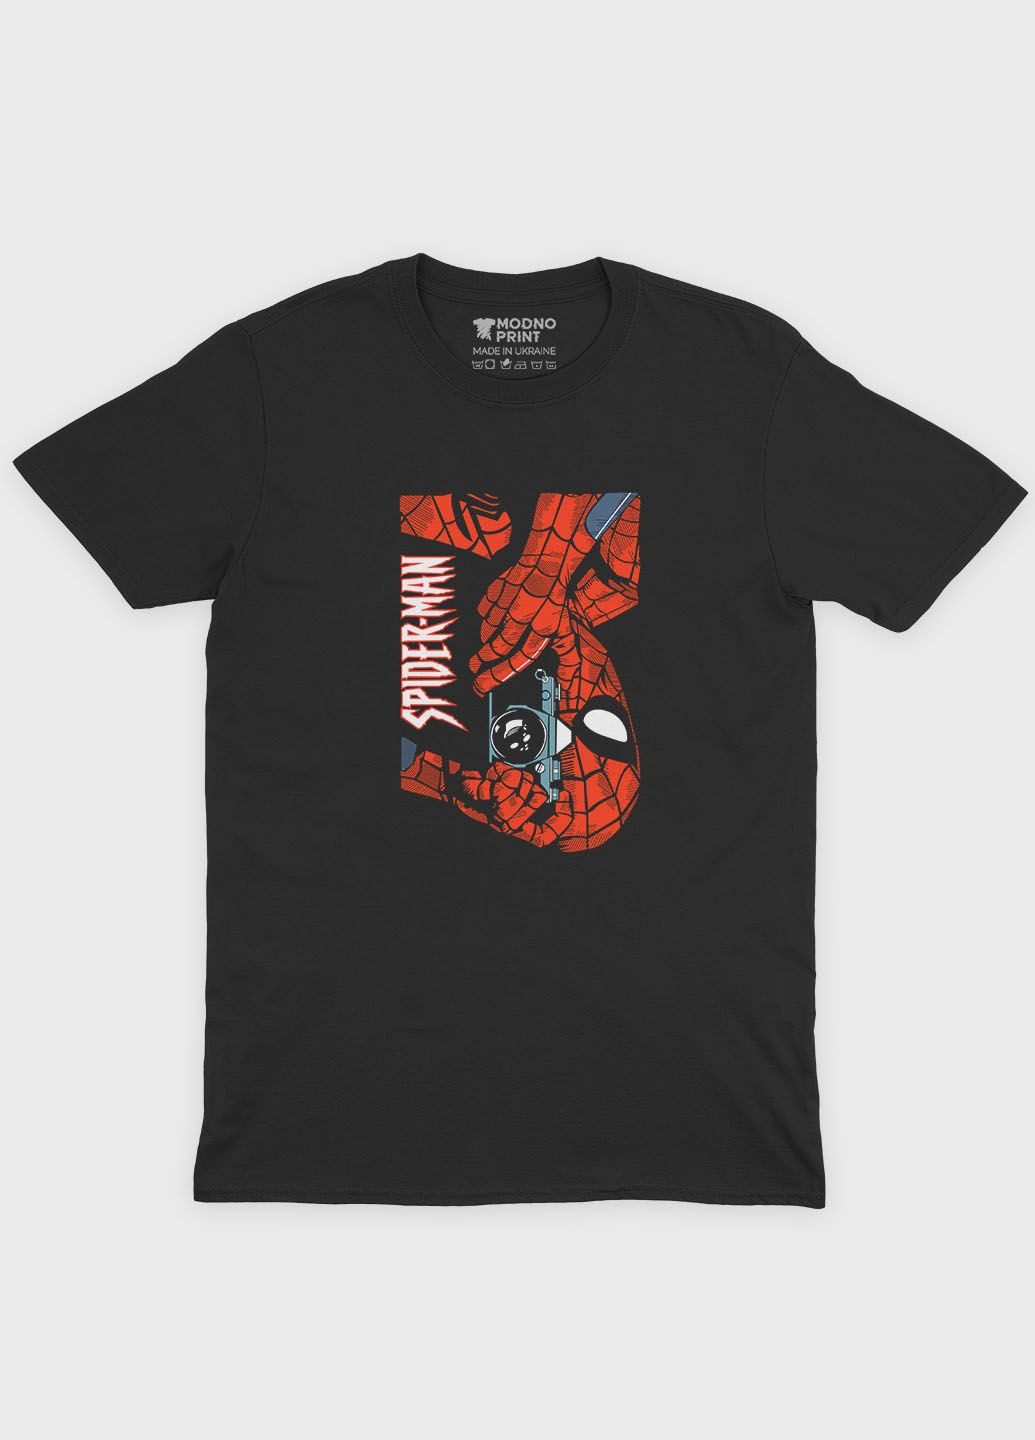 Черная демисезонная футболка для девочки с принтом супергероя - человек-паук (ts001-1-gl-006-014-042-g) Modno